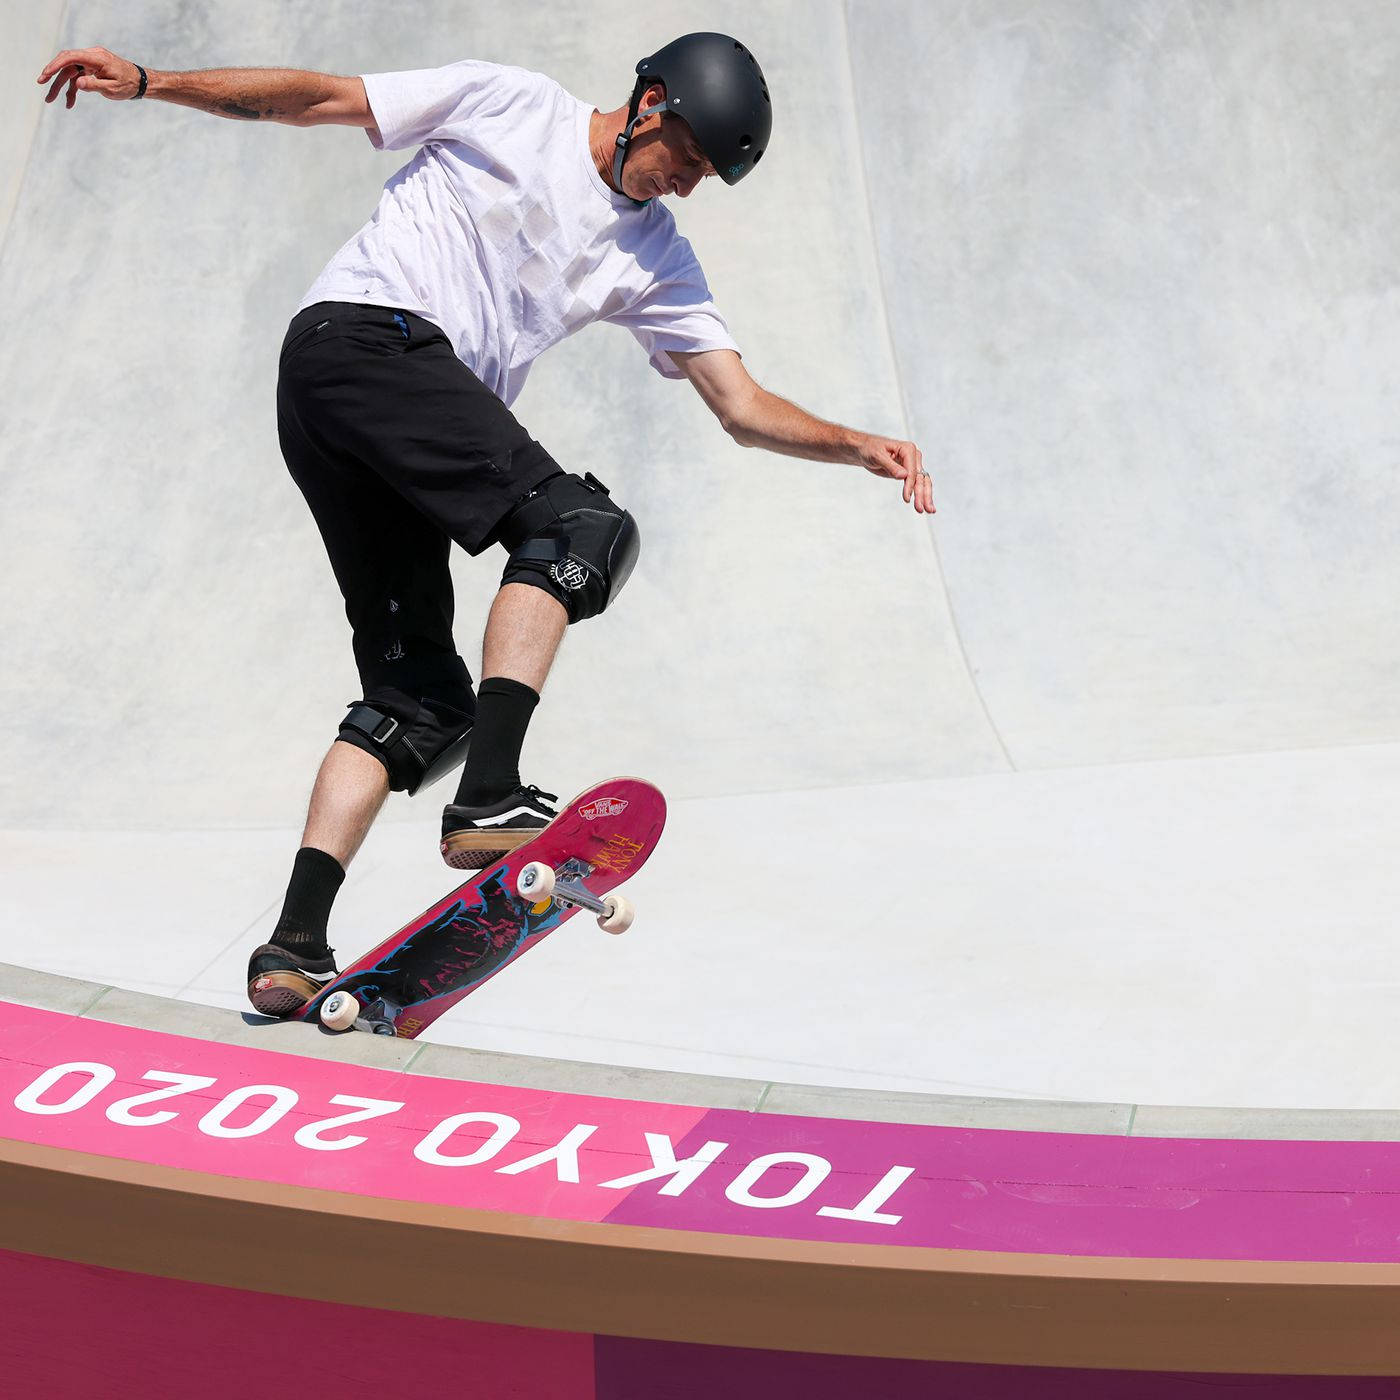 Bs Pivot Stall Skateboarding Background